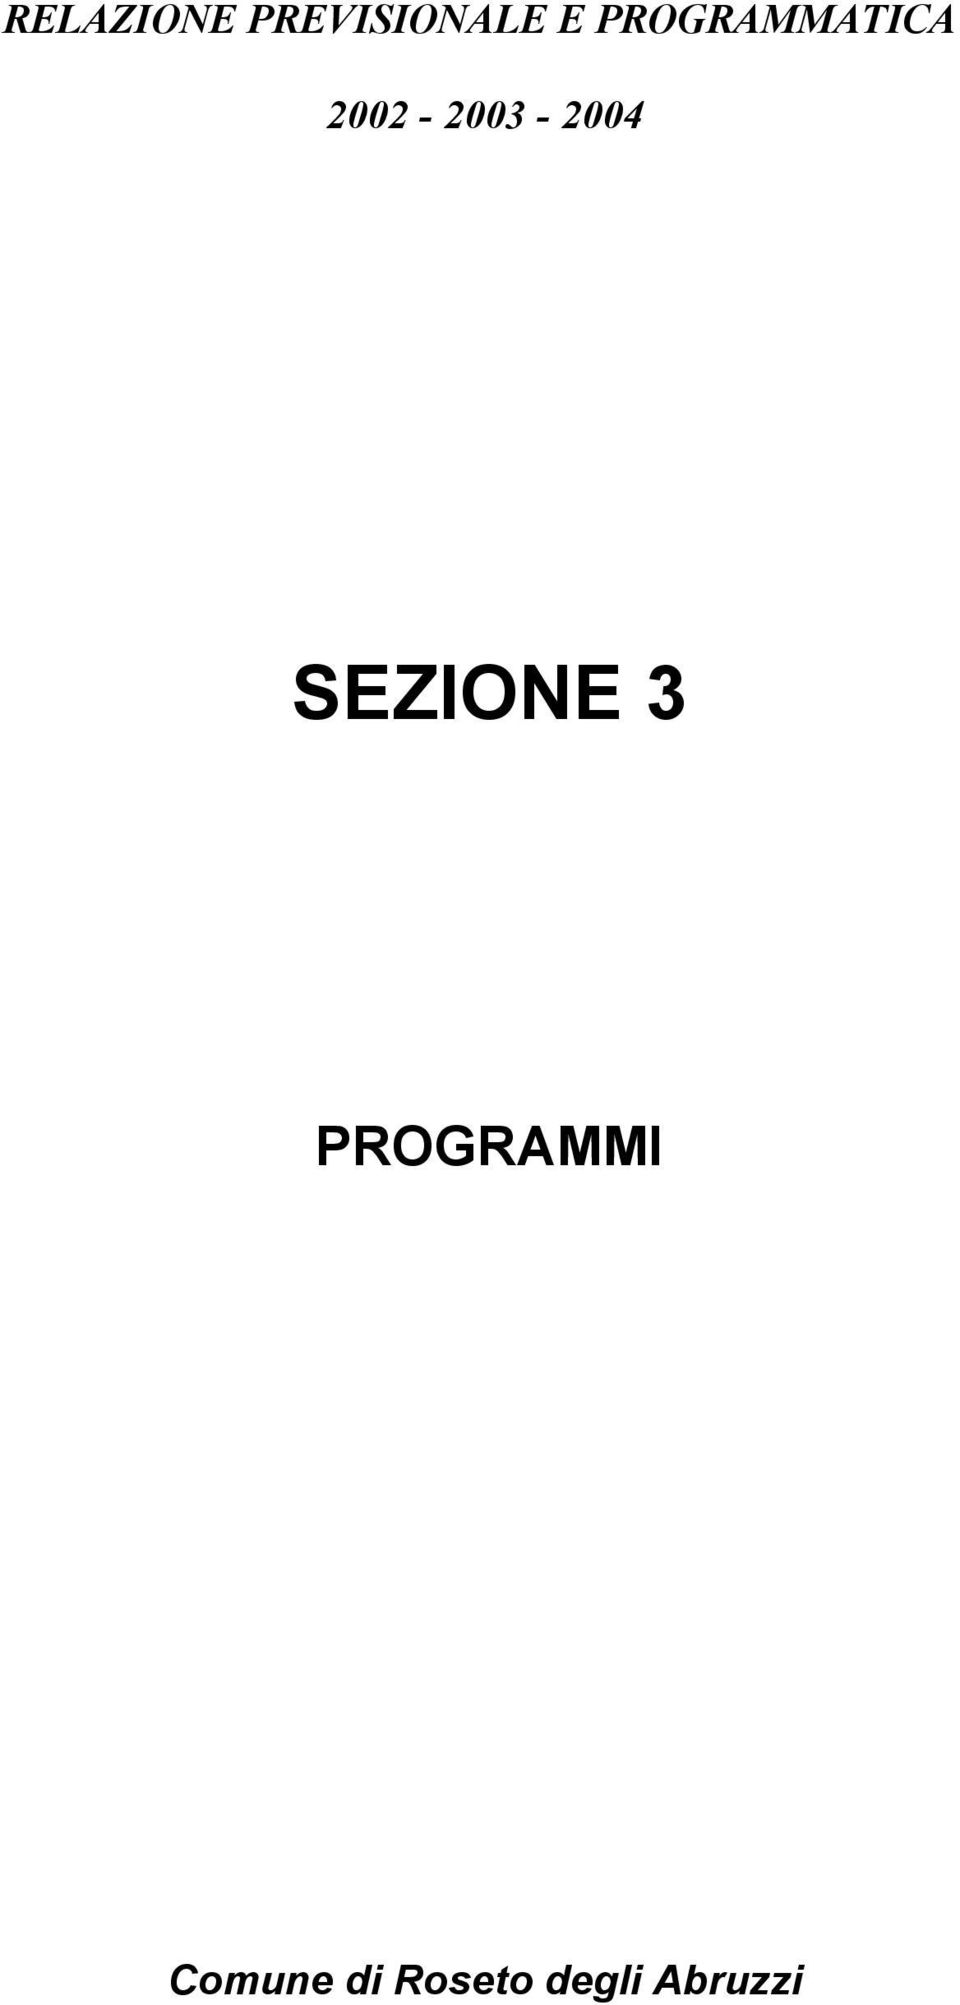 2004 SEZIONE 3 PROGRAMMI